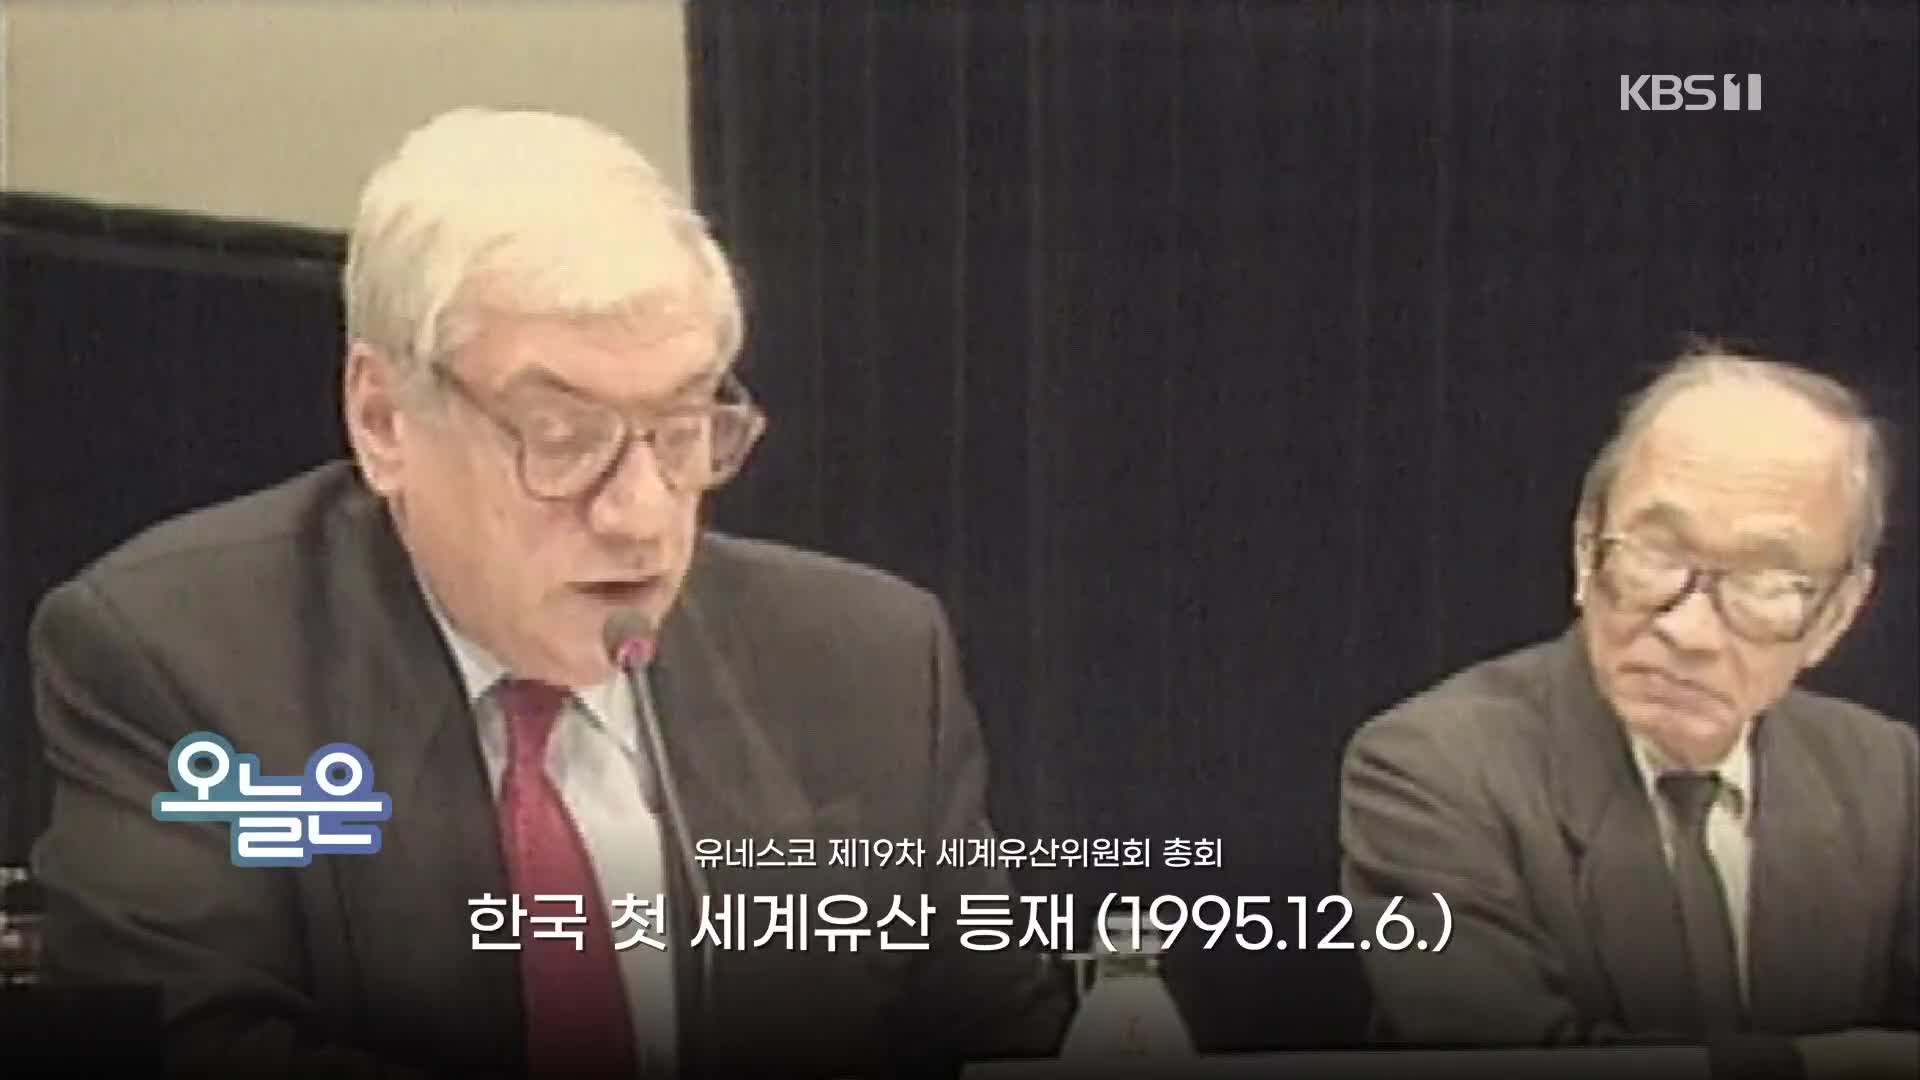 [오늘은] 한국 첫 세계유산 등재 (1995.12.6.)